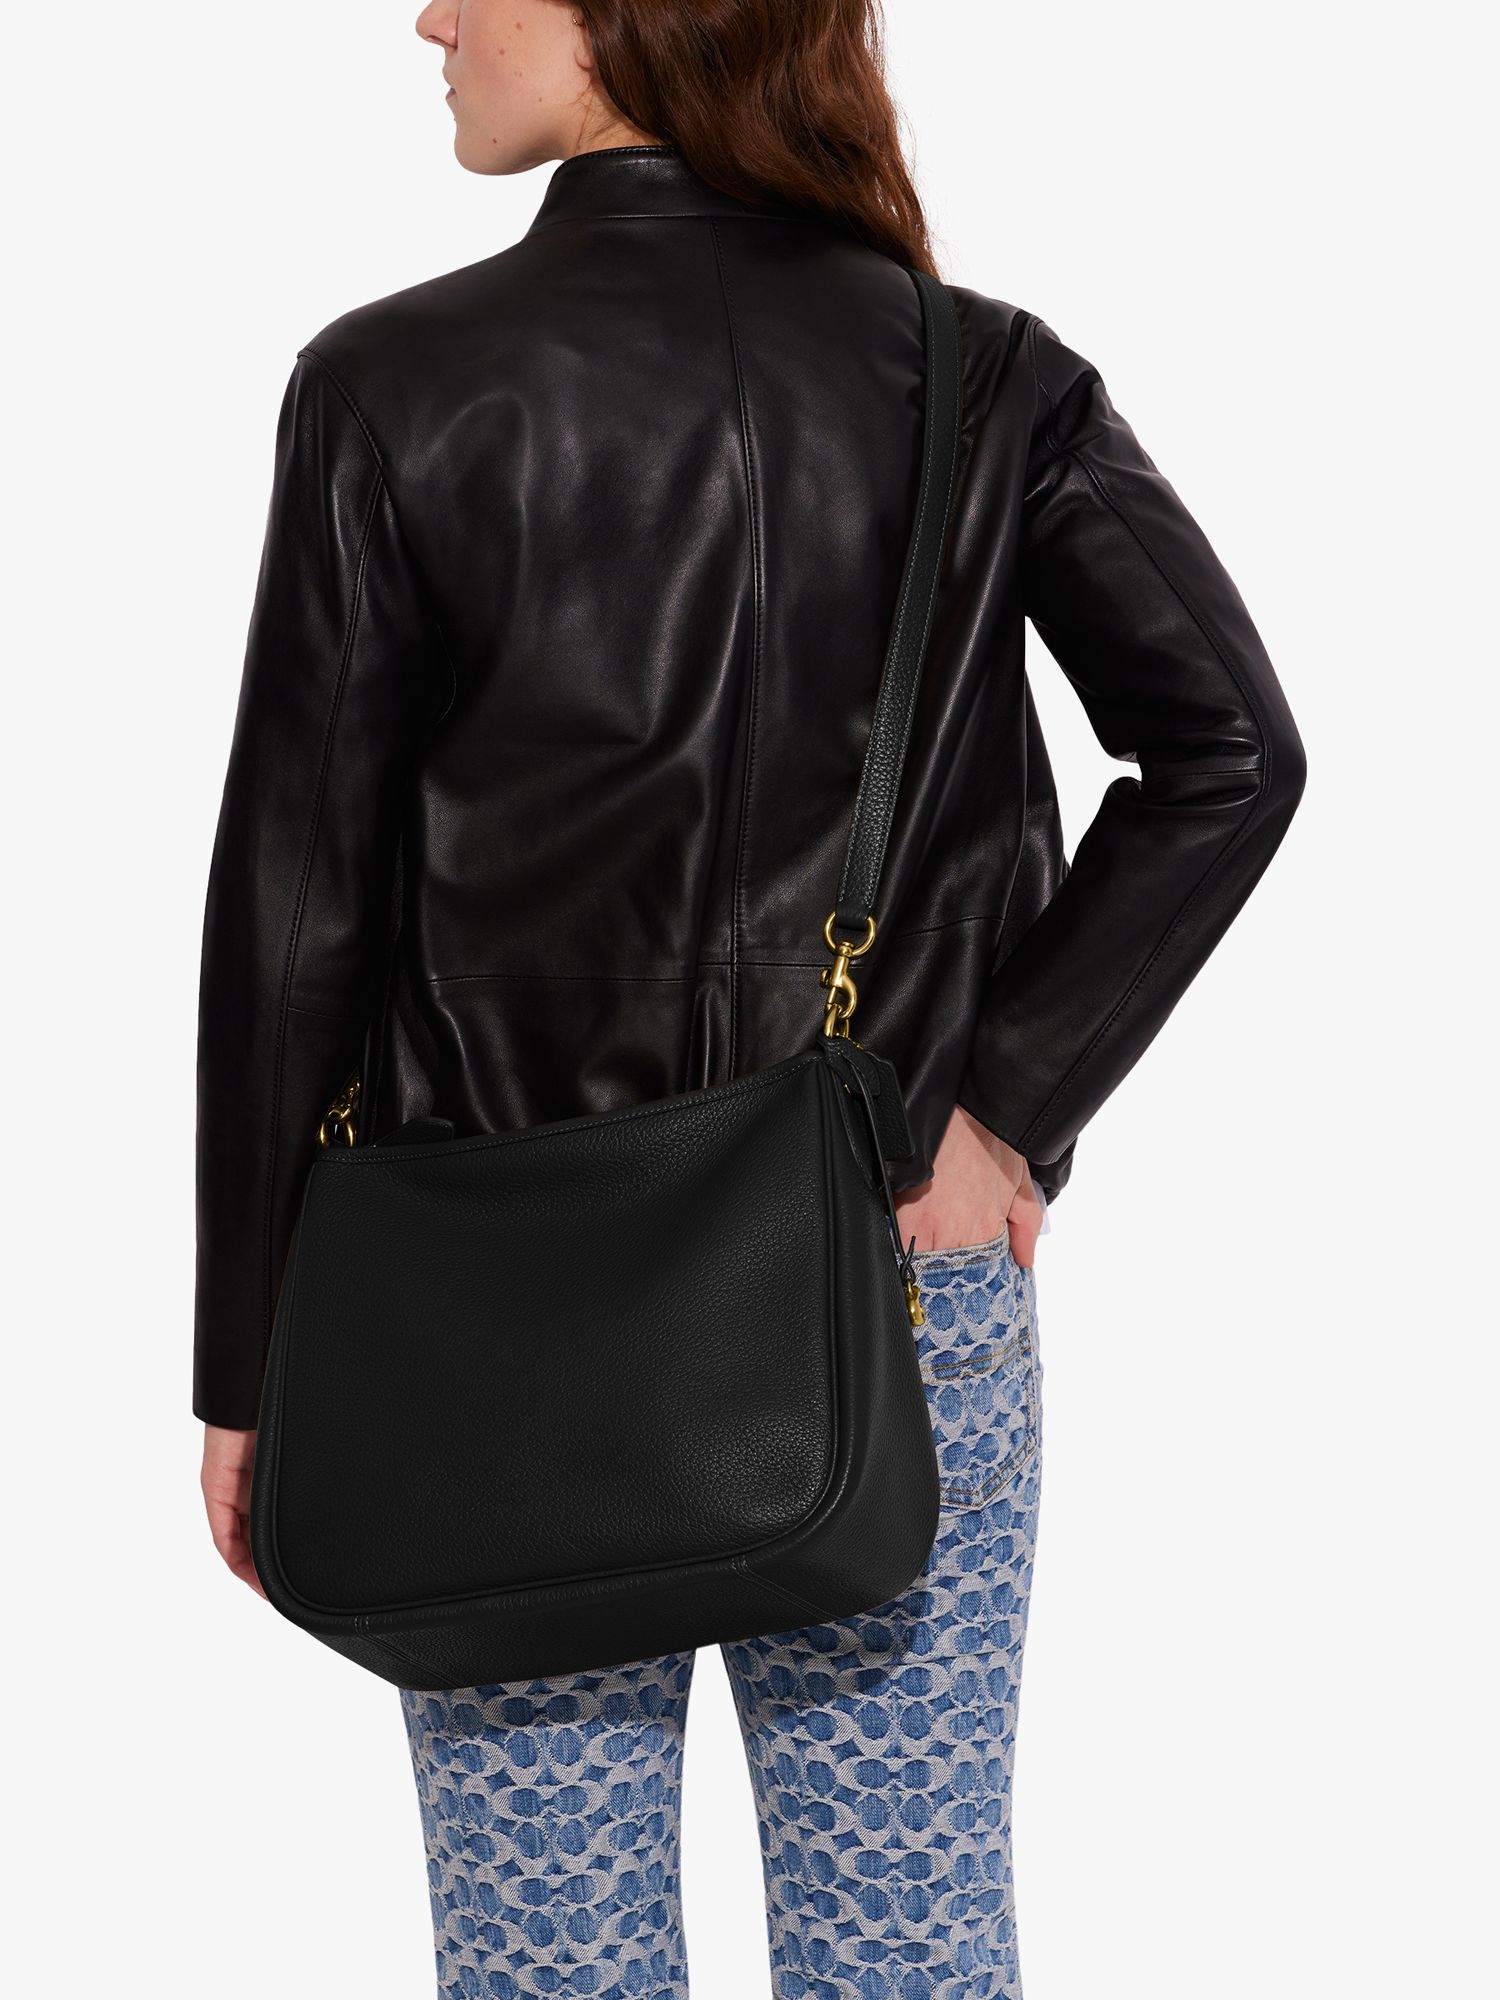 Coach Luna Leather Shoulder Bag, Black/Gold at John Lewis & Partners